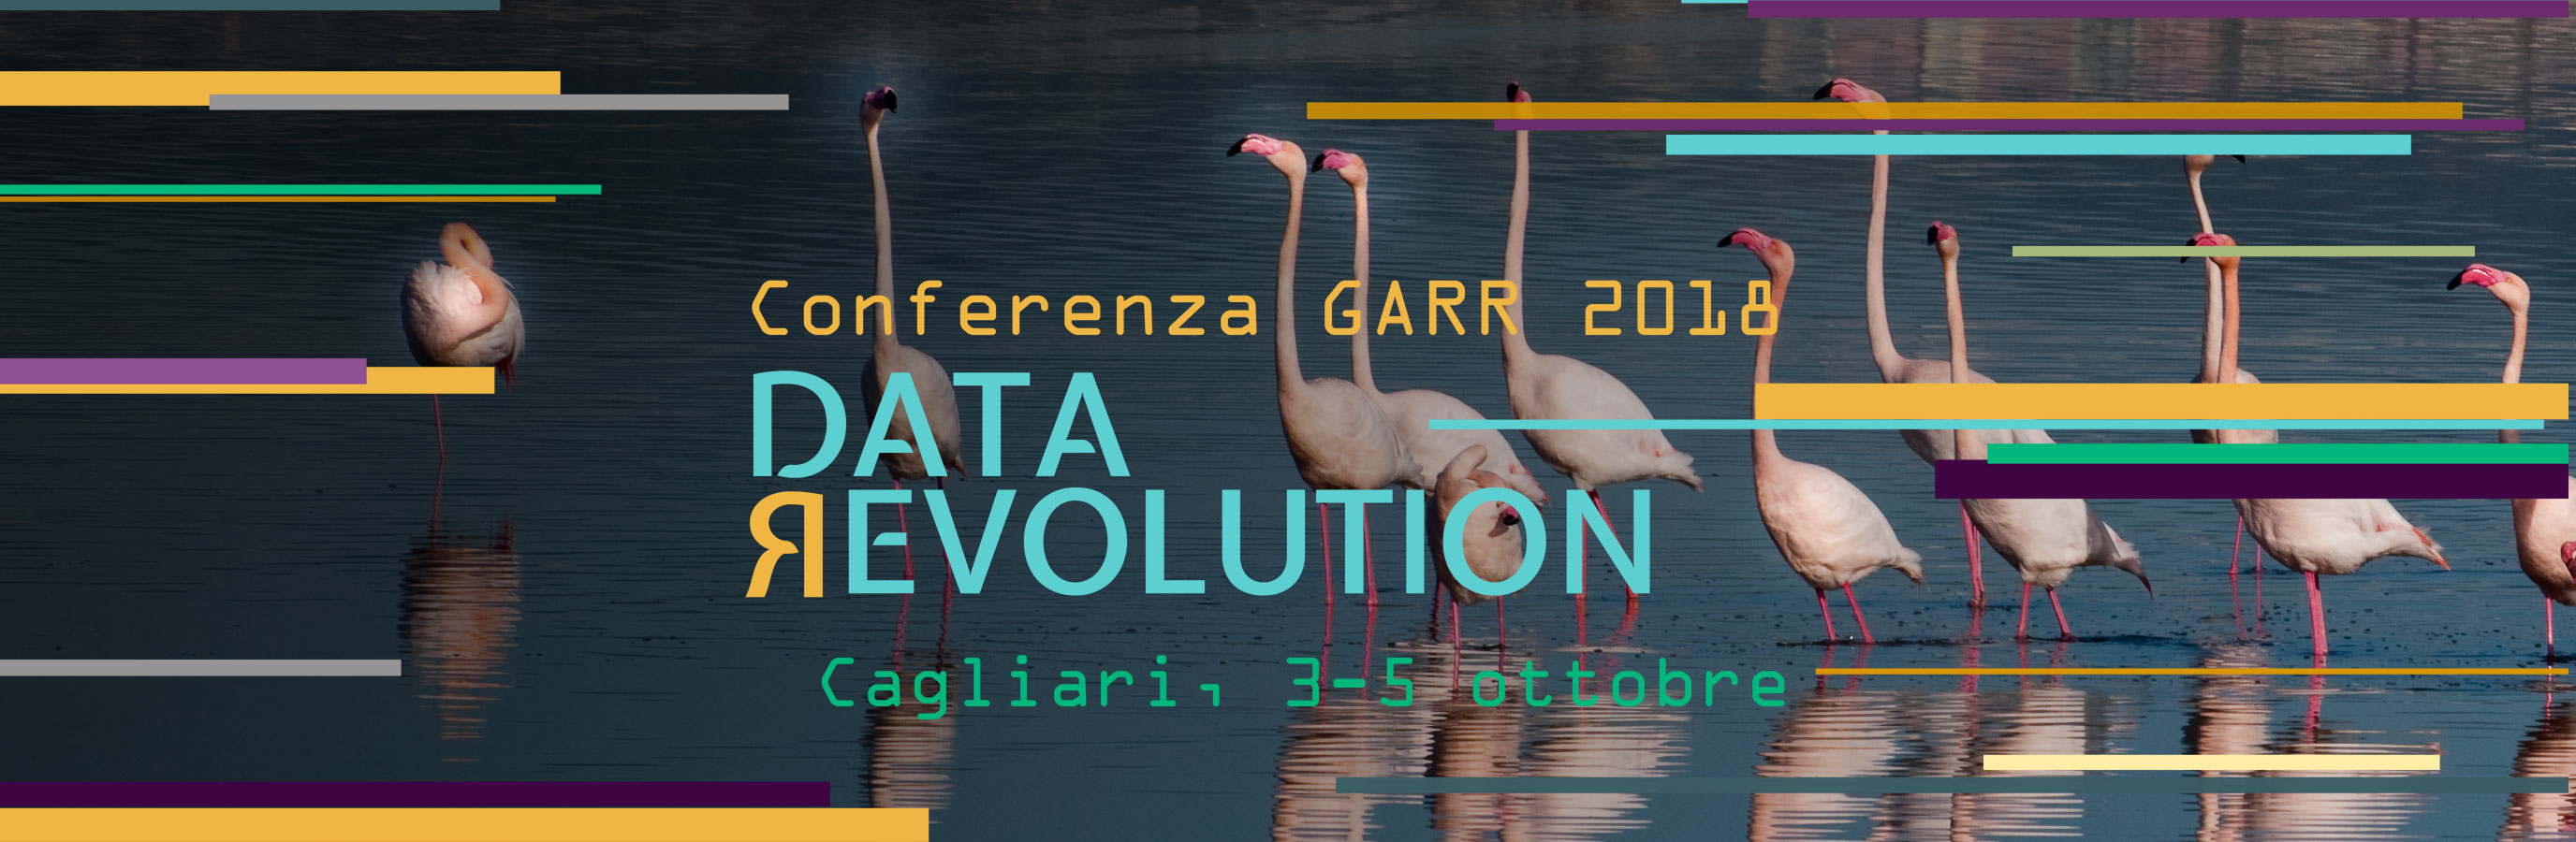 Conferenza GARR 2018 3